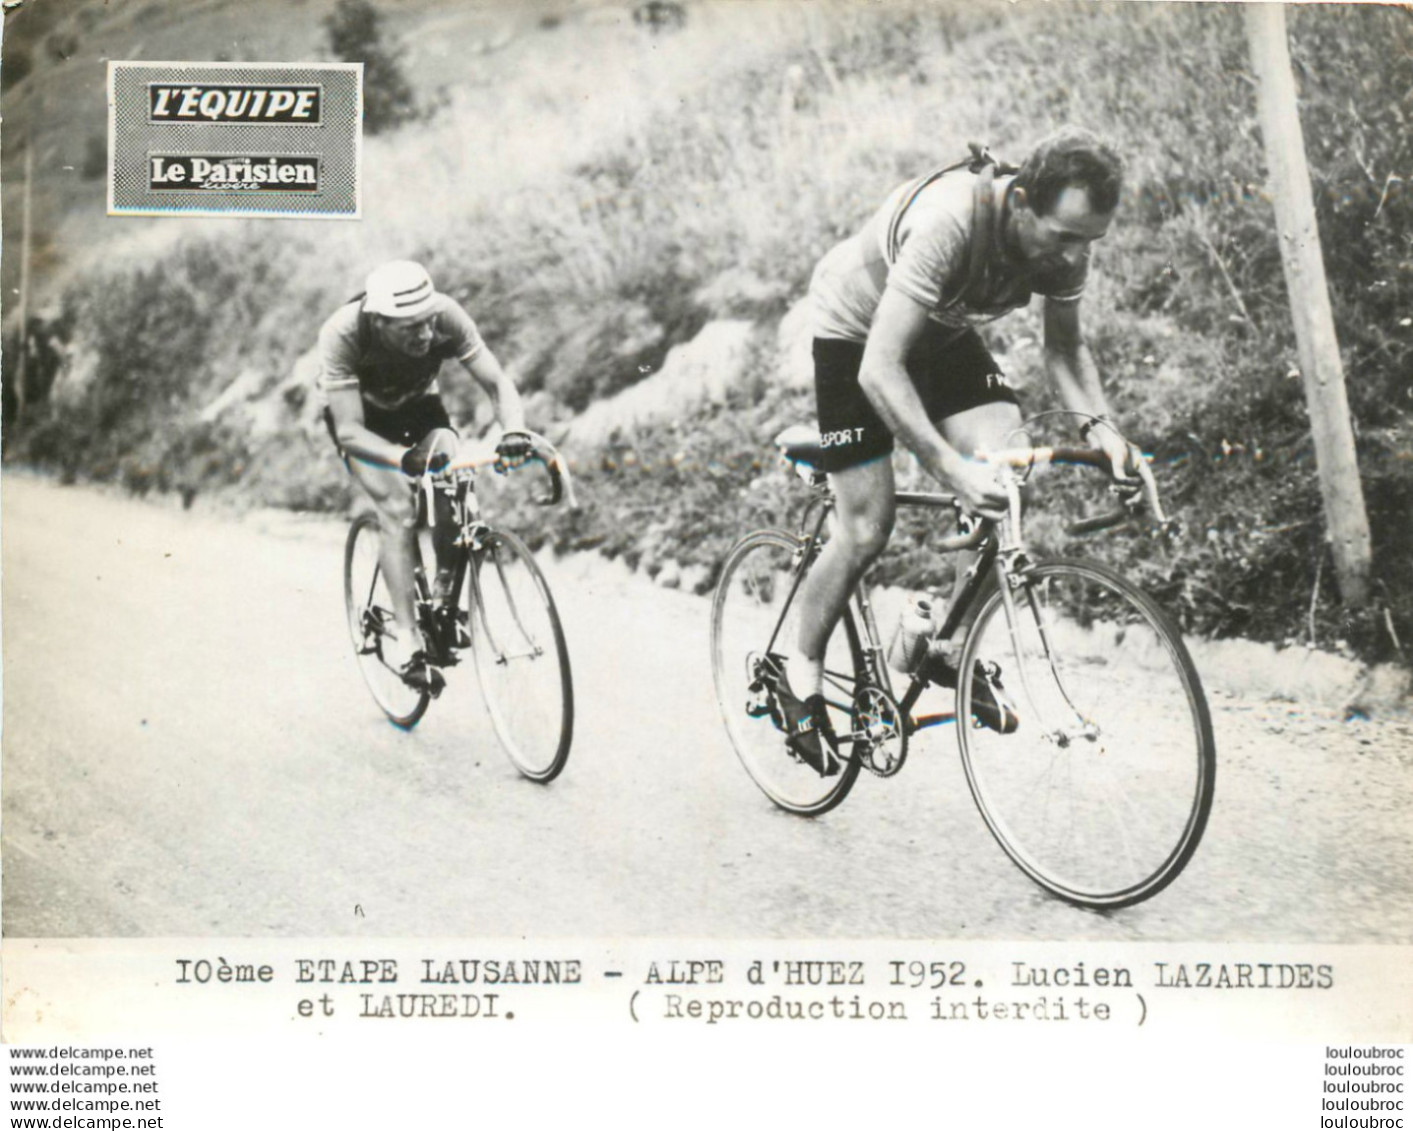 TOUR DE FRANCE 1952 LAZARIDES - LAUREDI  10ème ETAPE PHOTO DE PRESSE ORIGINALE ARGENTIQUE  20X15CM EQUIPE  LE PARISIEN - Sport